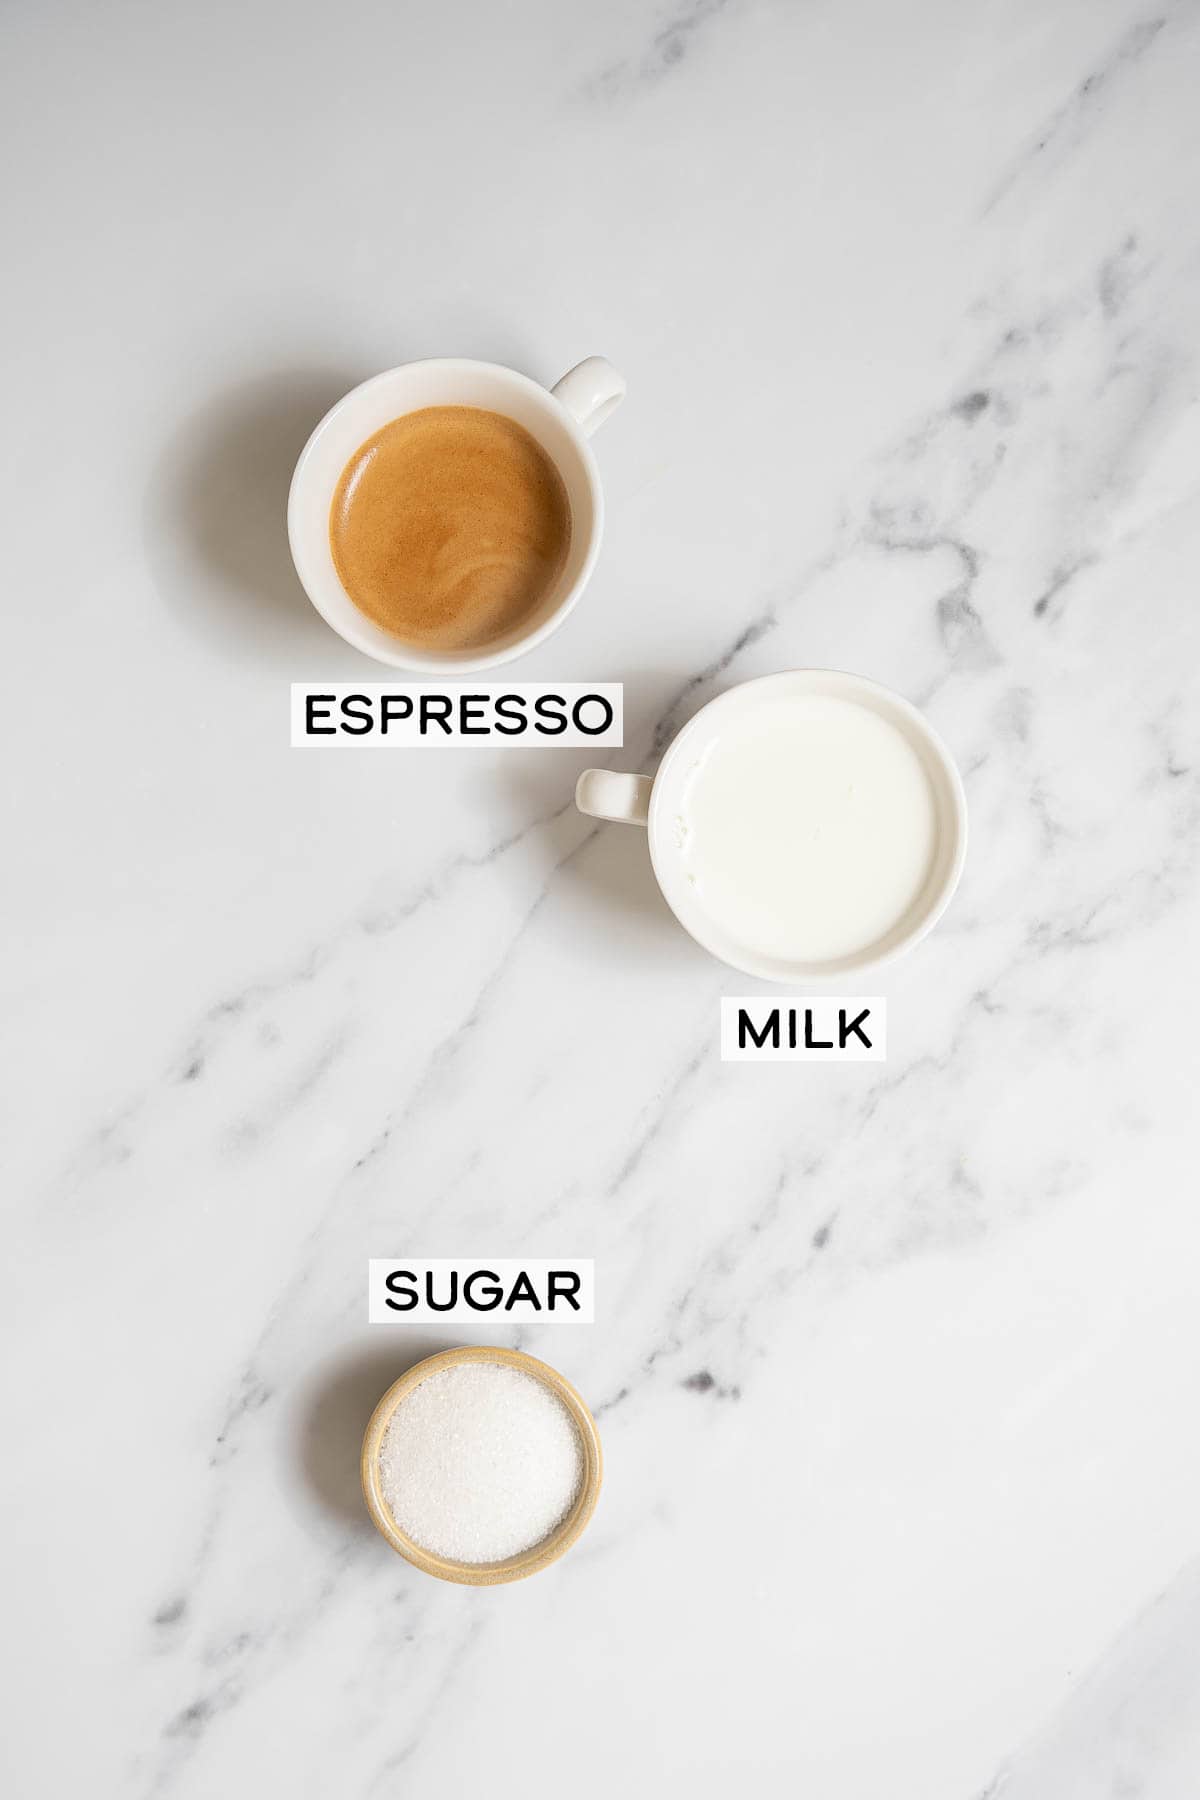 espresso, milk, and sugar on a white marble countertop.